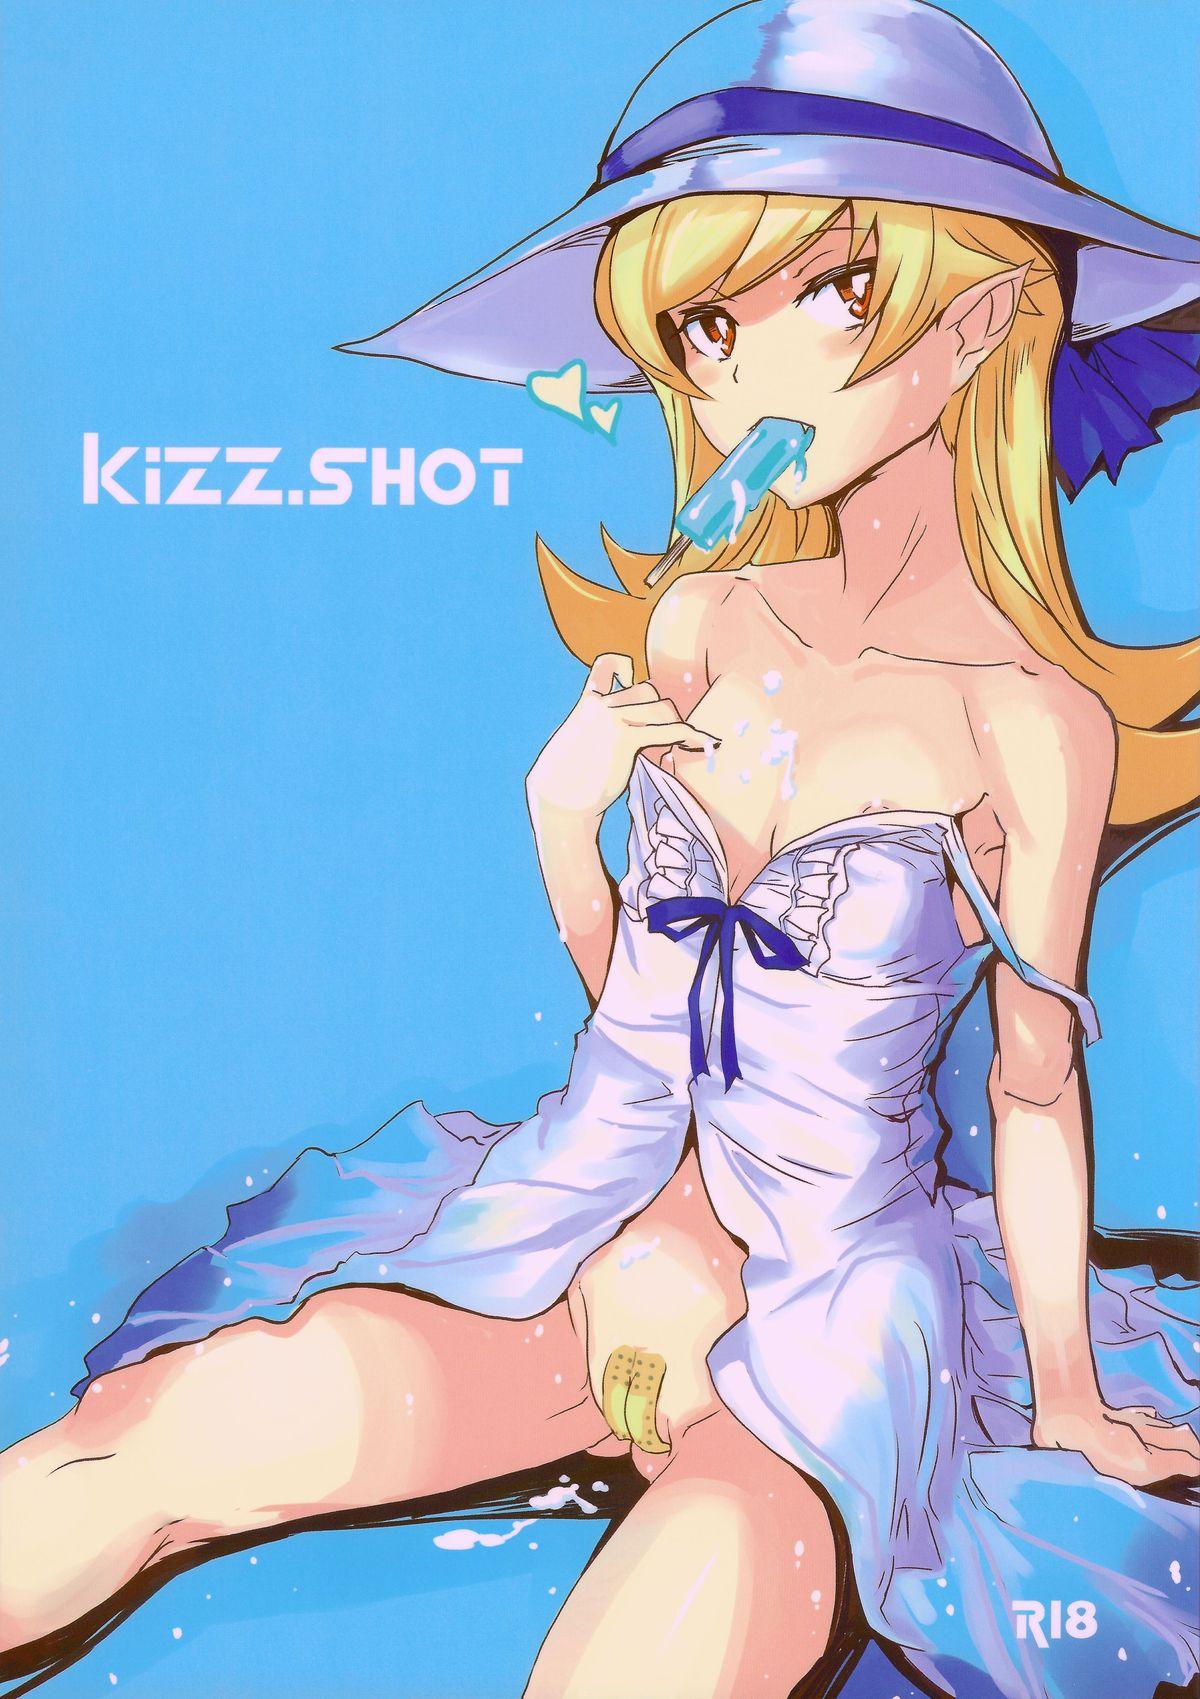 kizz.SHOT 0